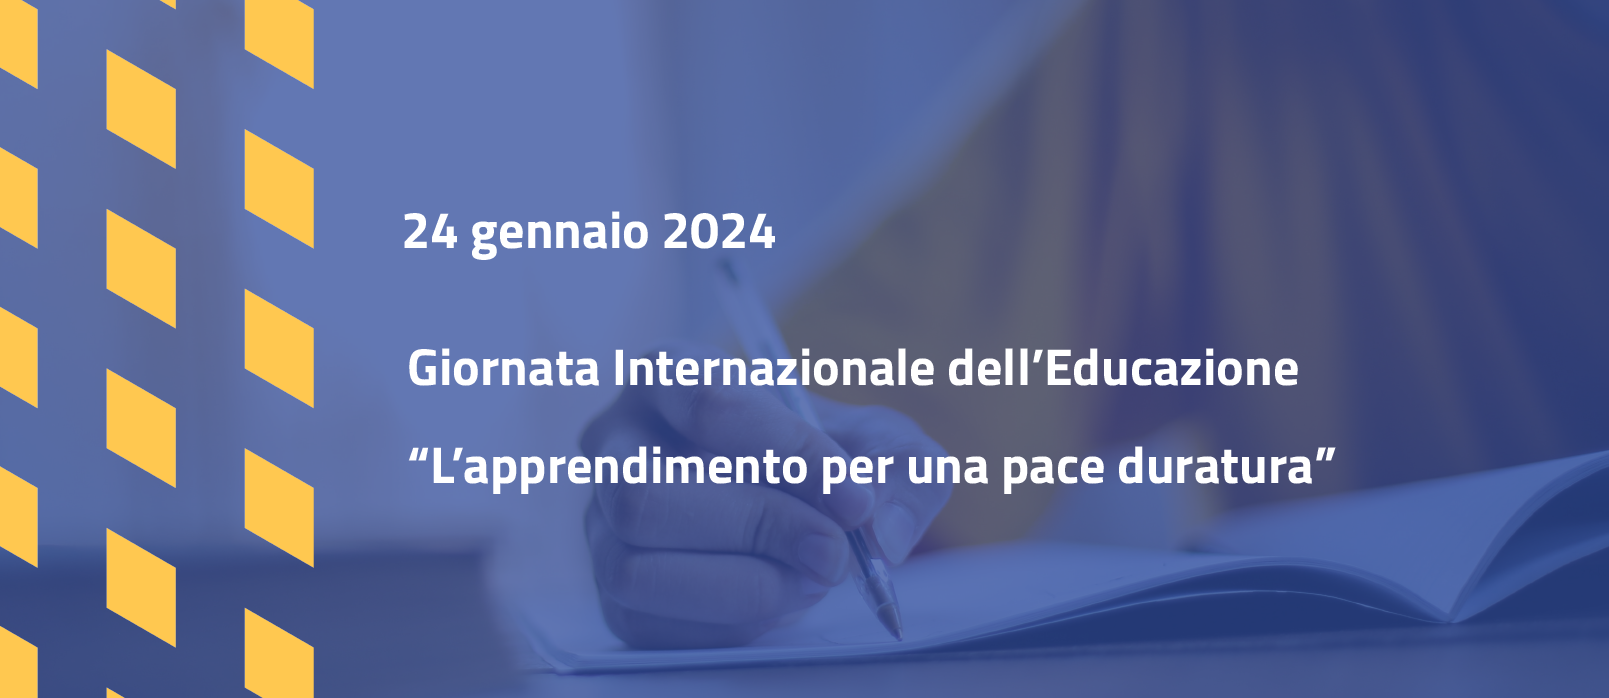 Giornata internazionale dell'Educazione 2024